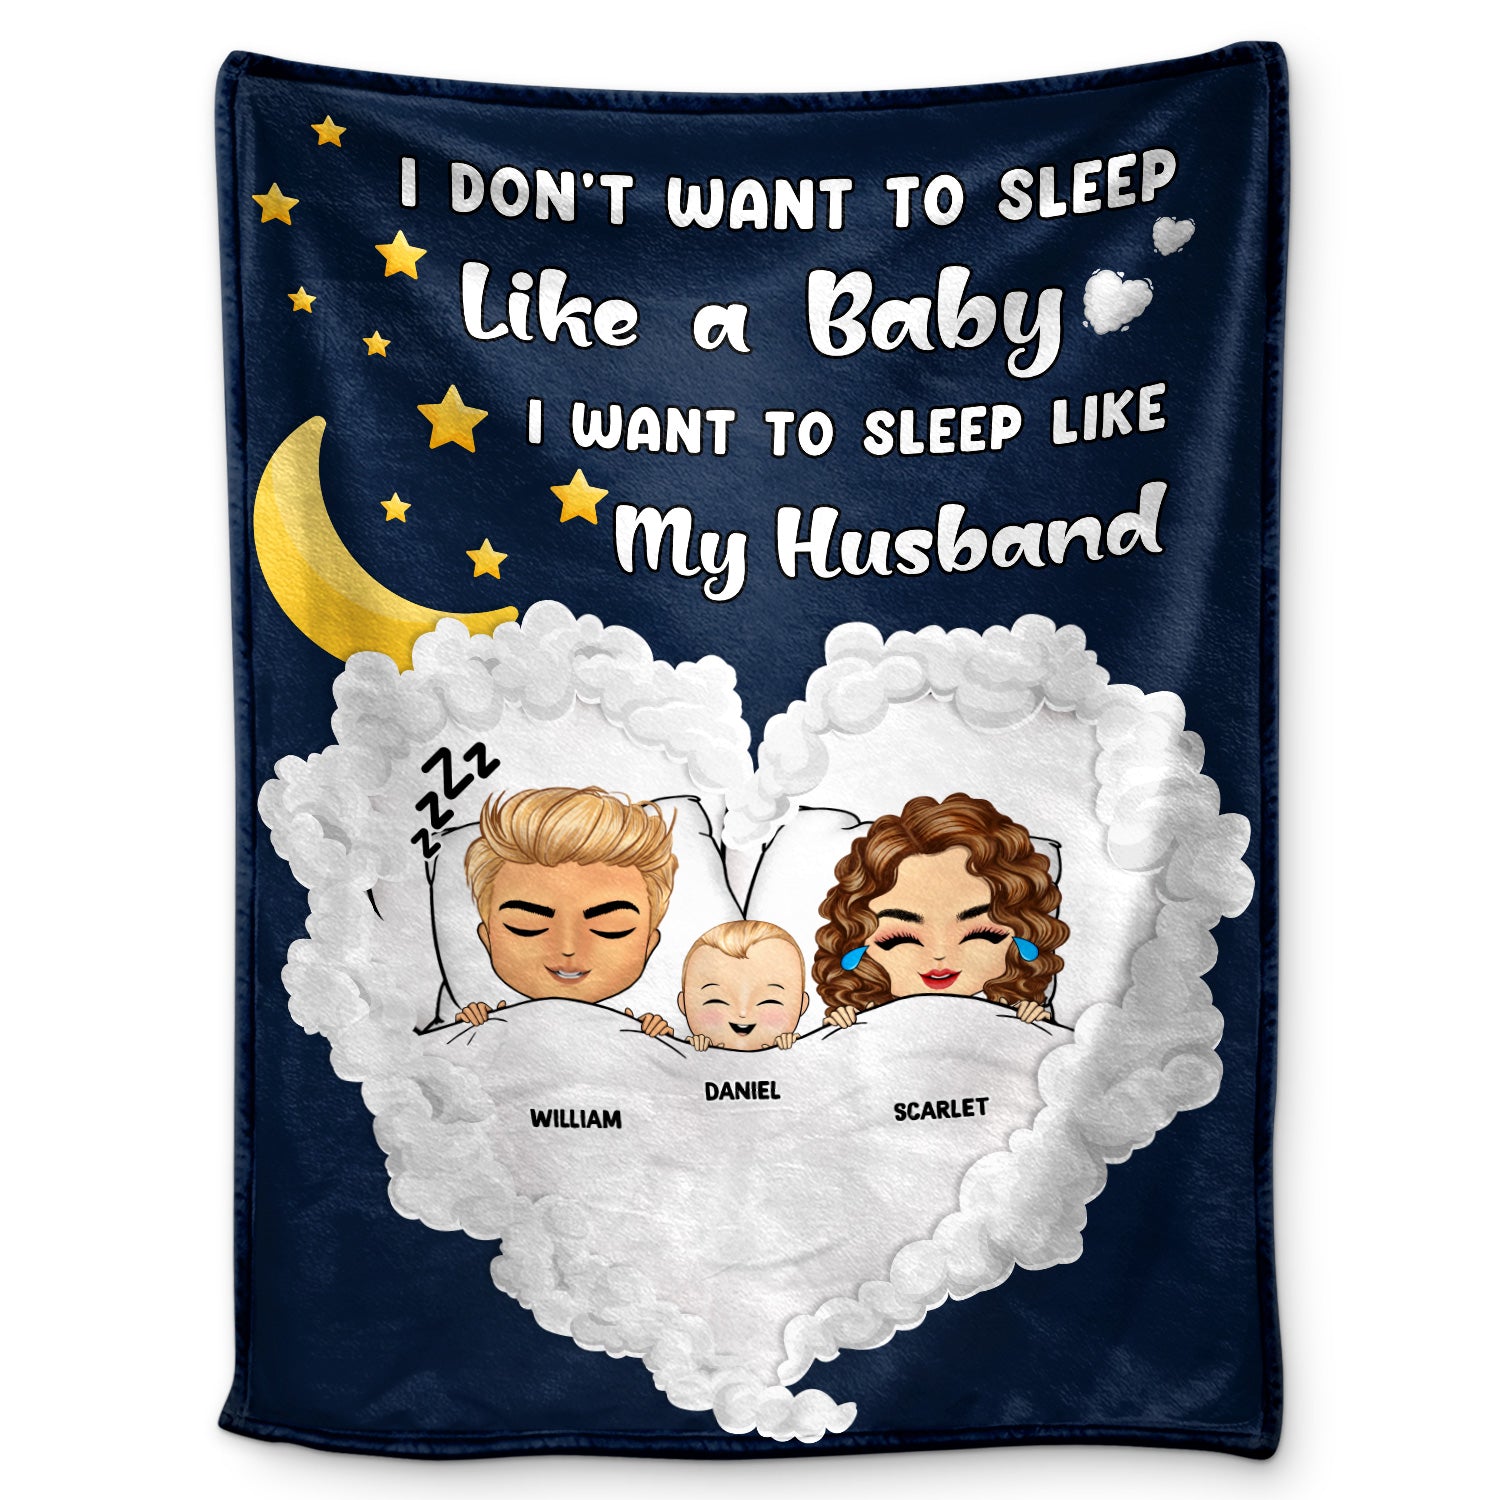 Sleep Like My Husband - Gift For Mother - Personalized Custom Fleece Blanket